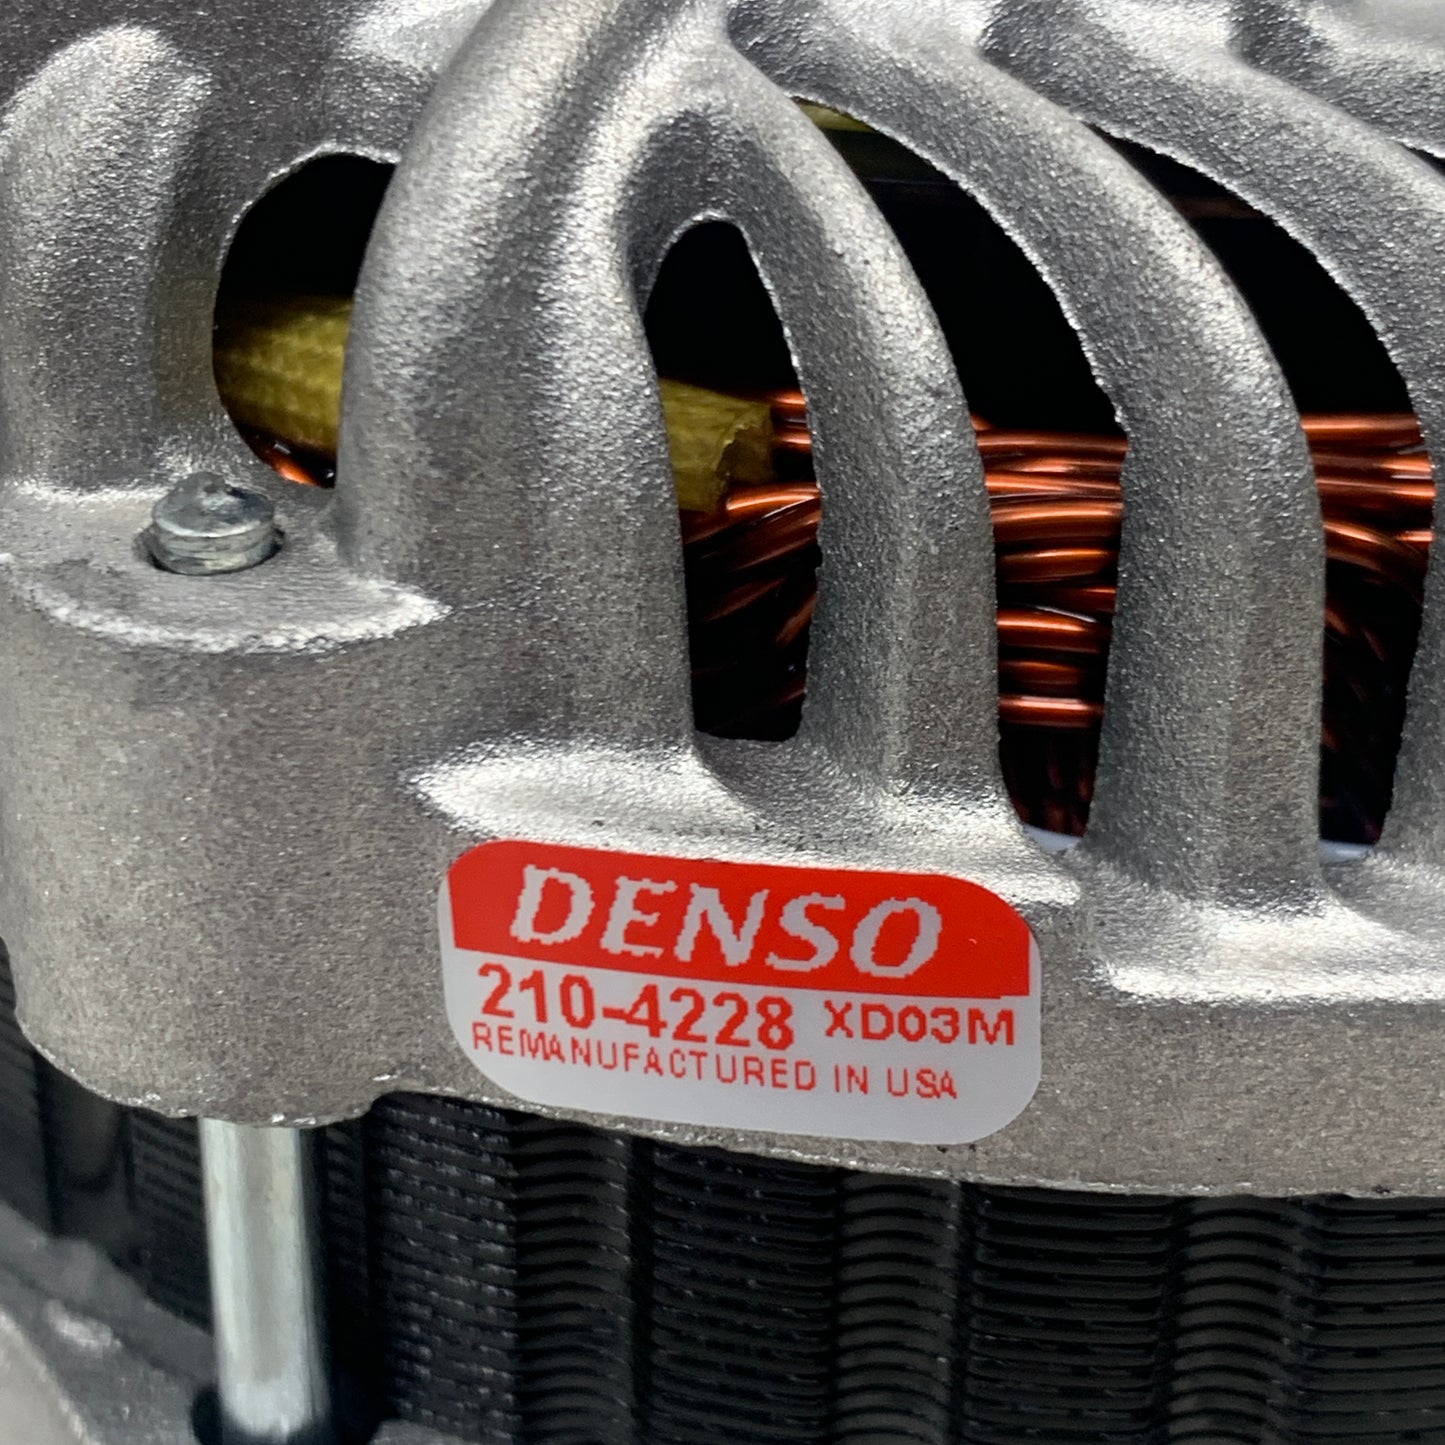 DENSO Alternator XD03M 210-4228 (Remanufactured)